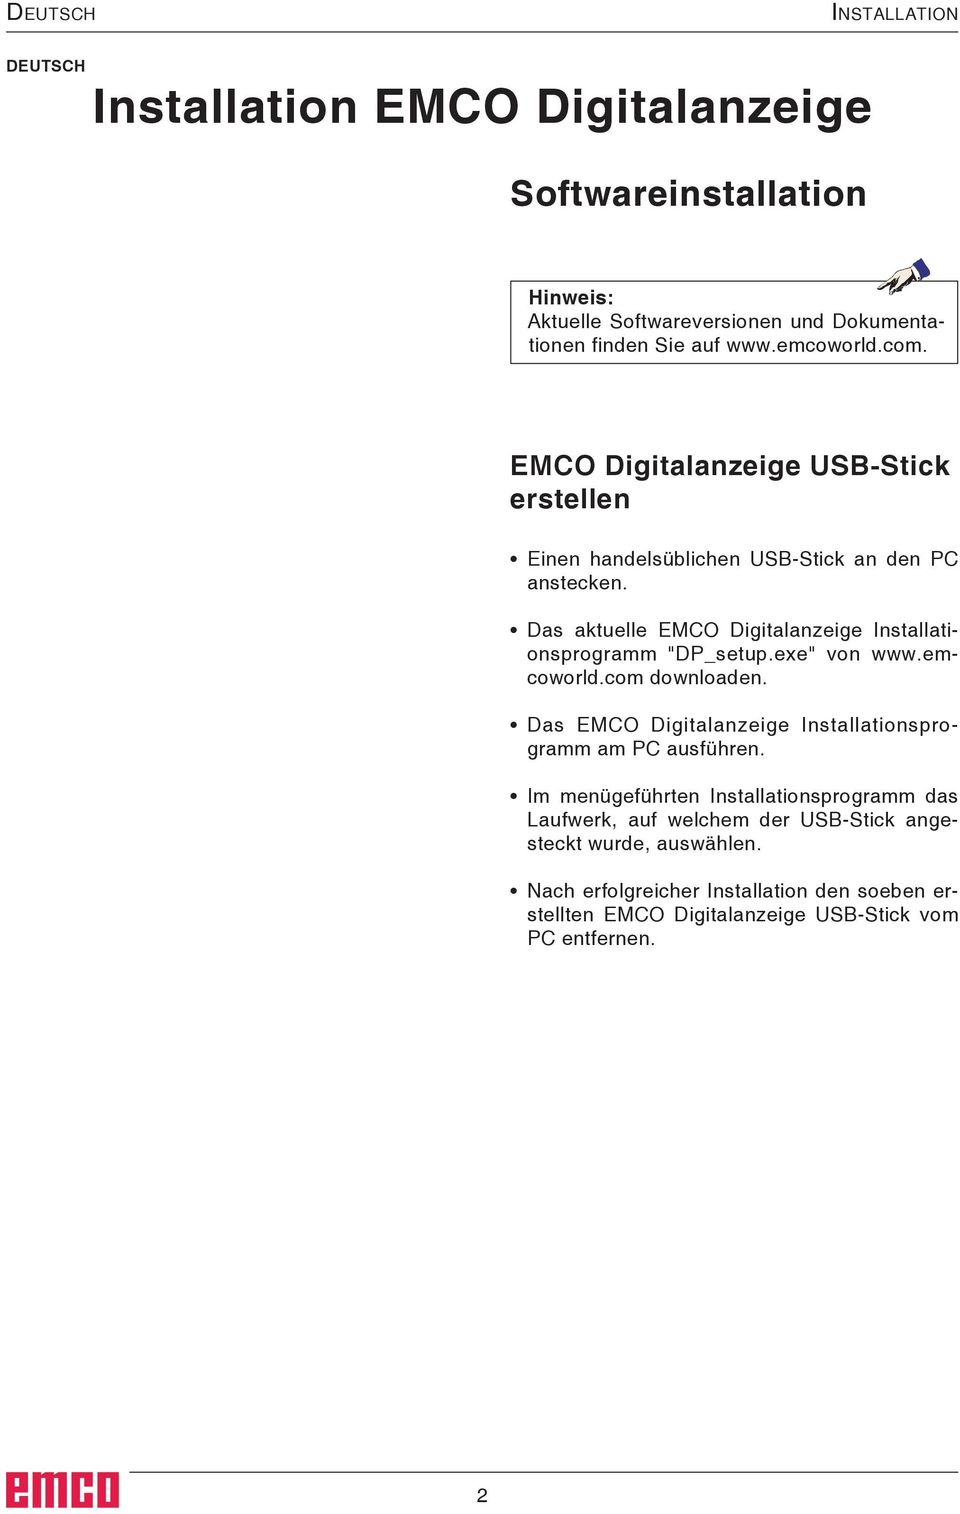 Das aktuelle EMCO Digitalanzeige Installationsprogramm "DP_setup.exe" von www.emcoworld.com downloaden.